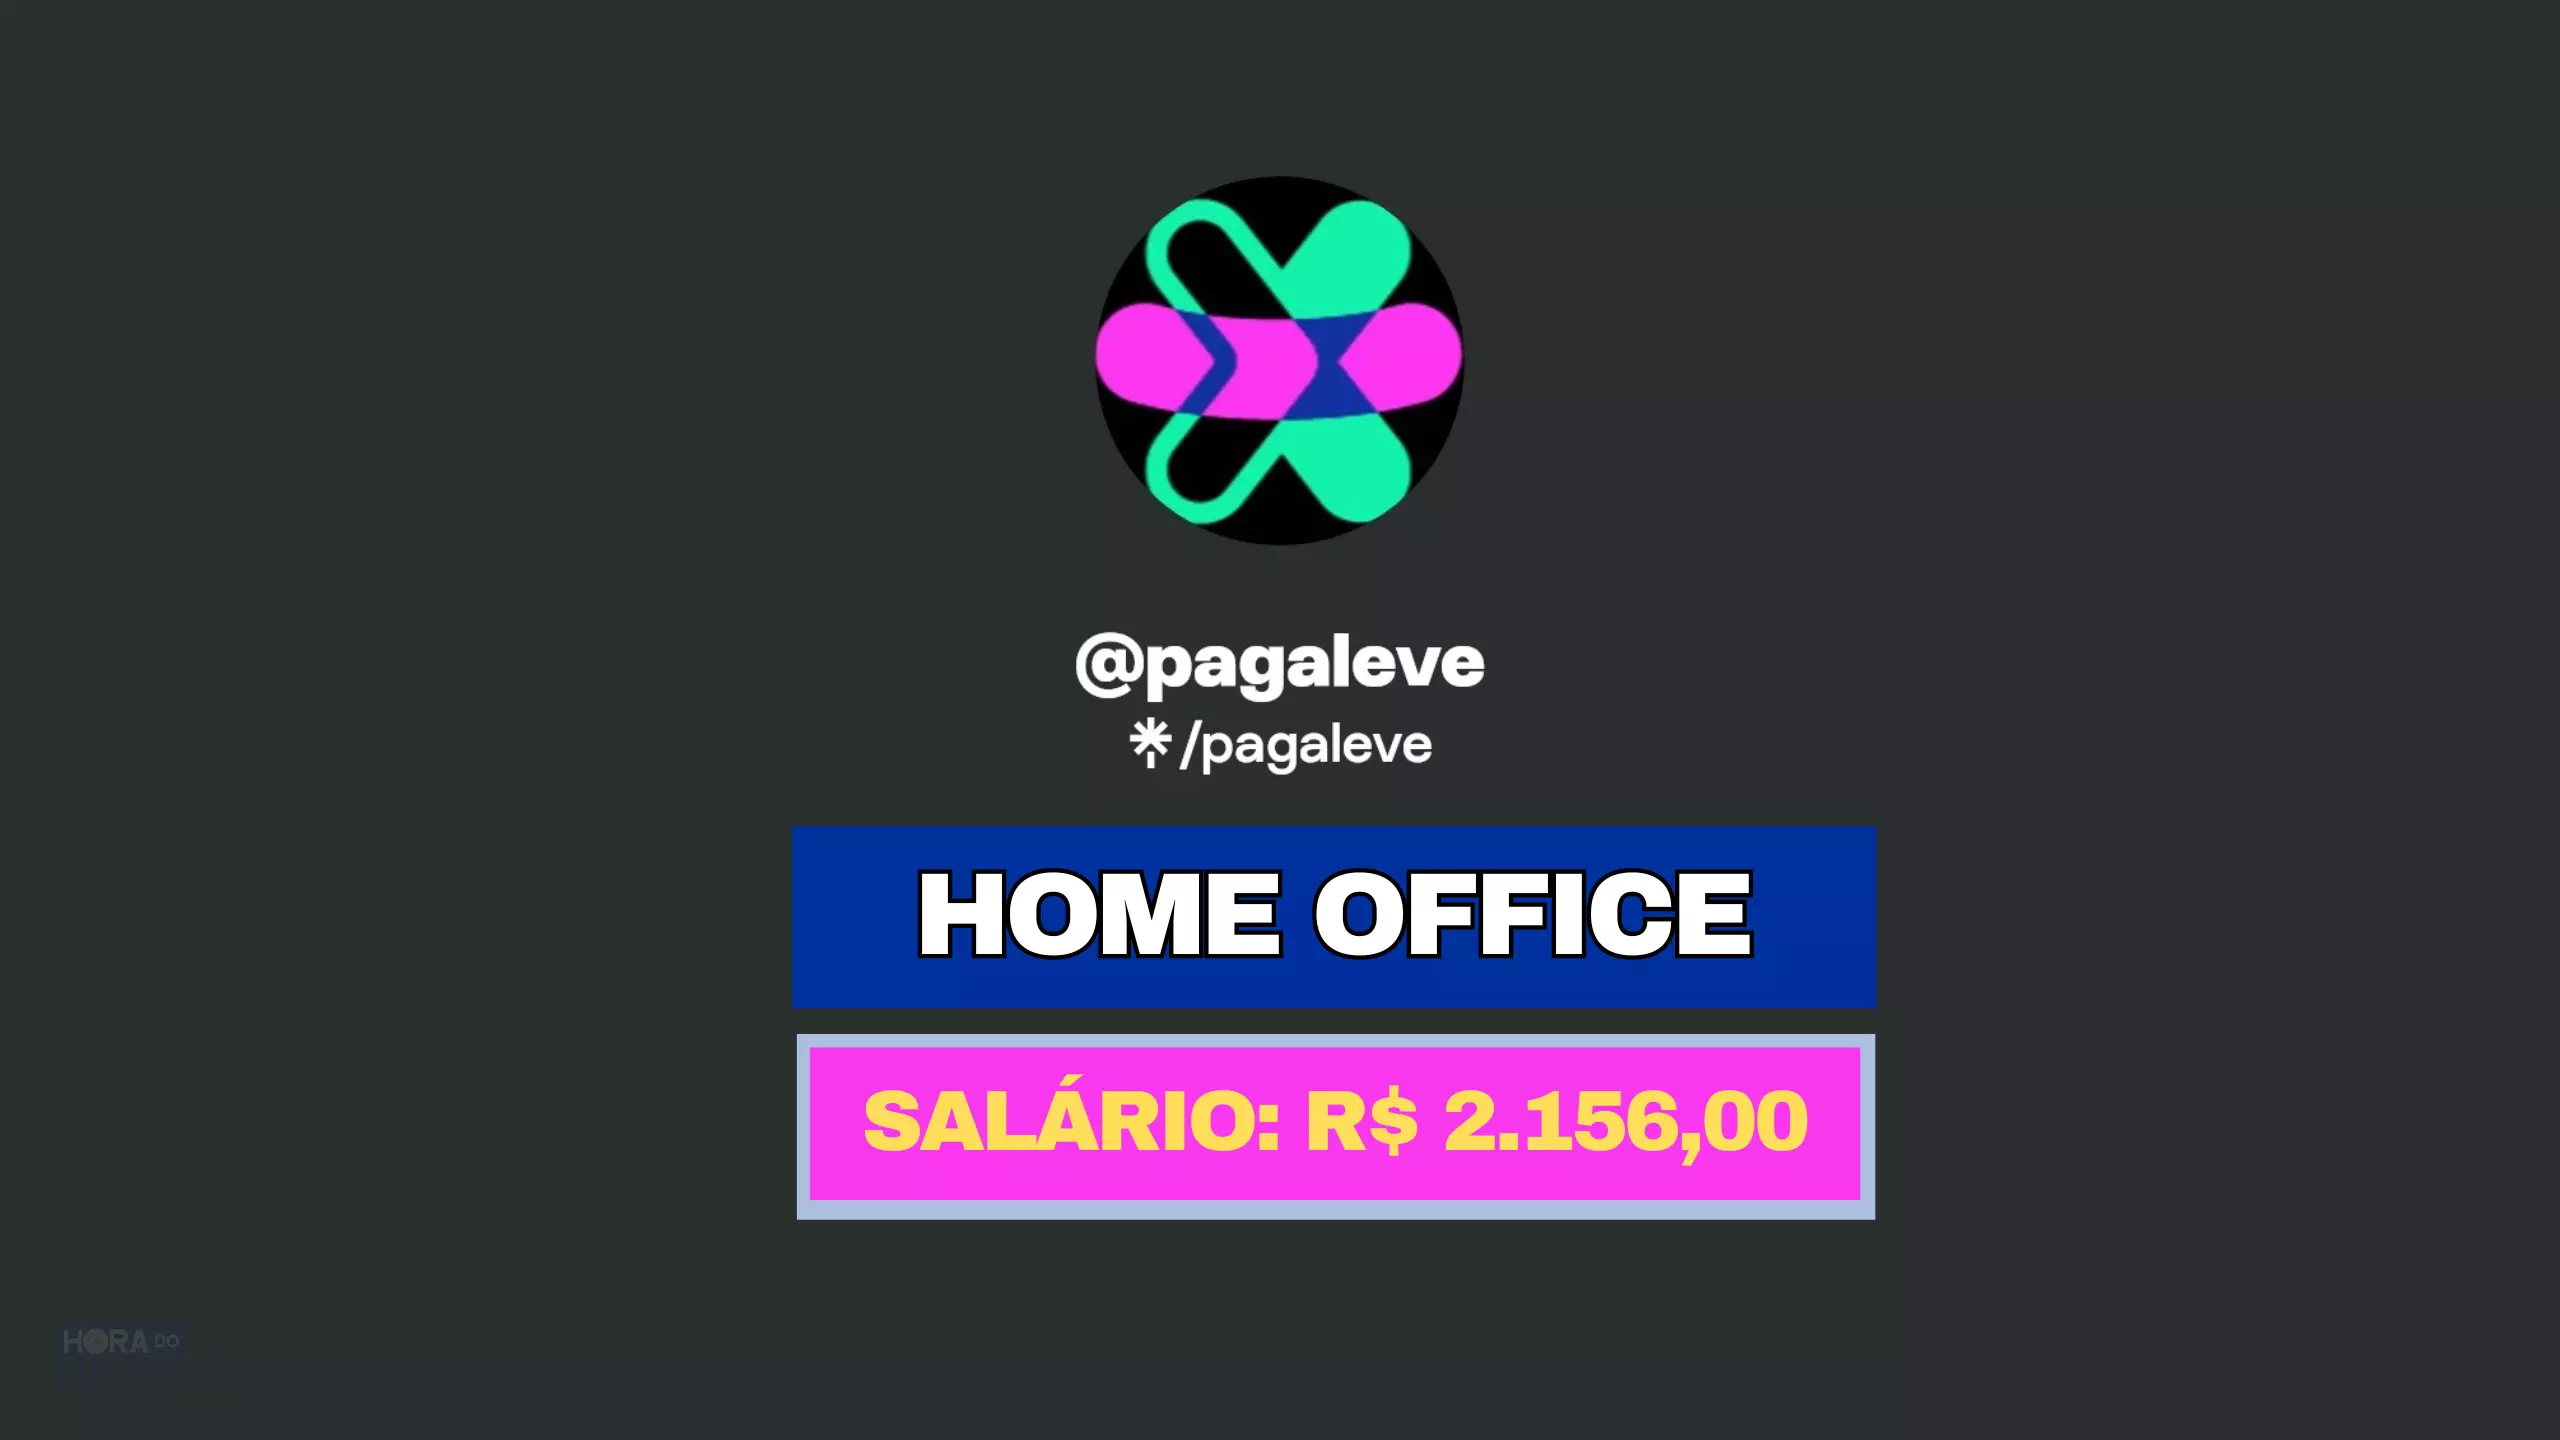 Pagaleve abre vaga 100% HOME OFFICE para Agente de Cobrança com salário de R$ 2.156,00